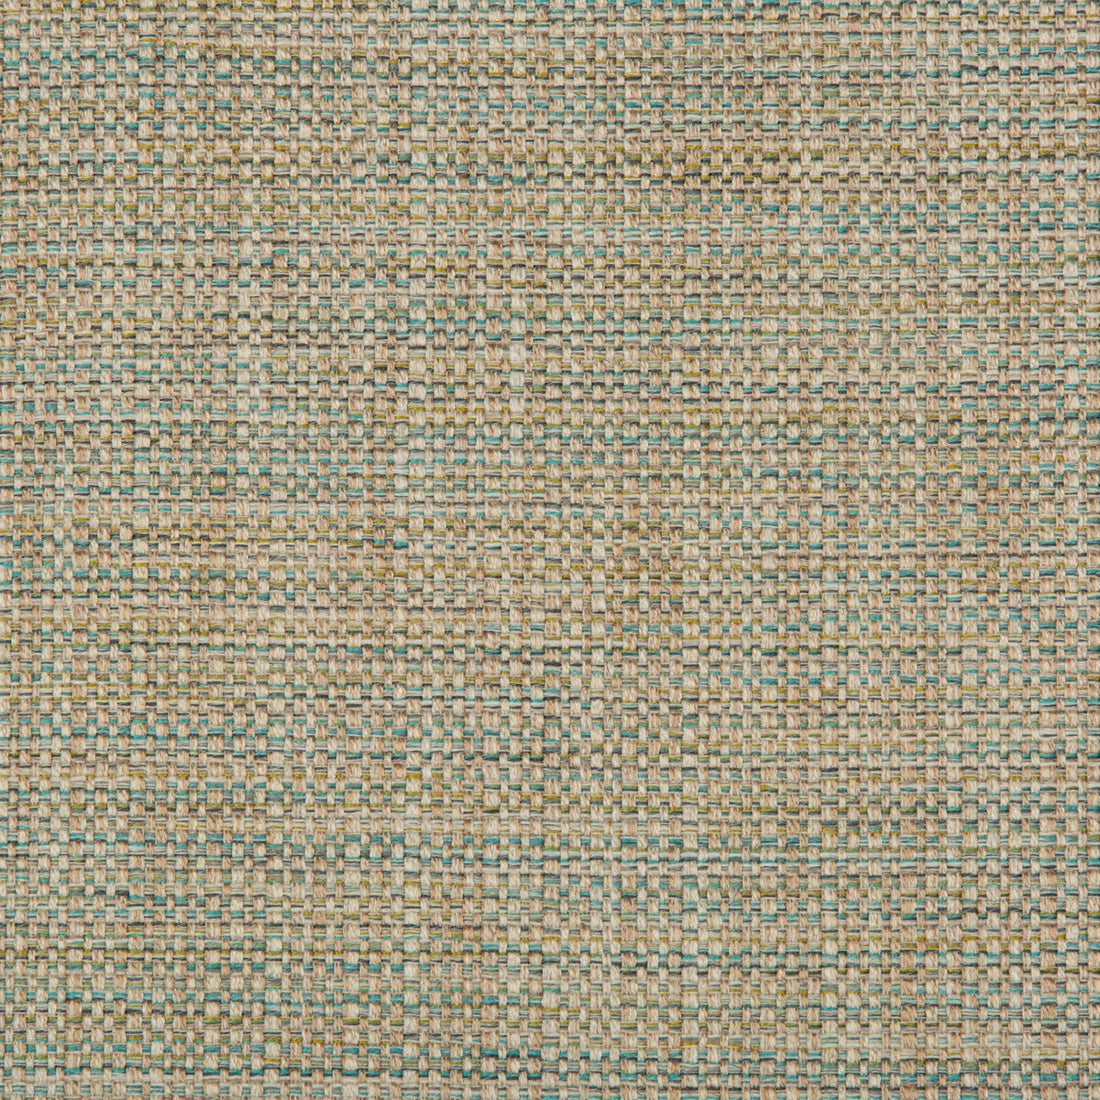 Kravet Basics fabric in 35250-316 color - pattern 35250.316.0 - by Kravet Basics